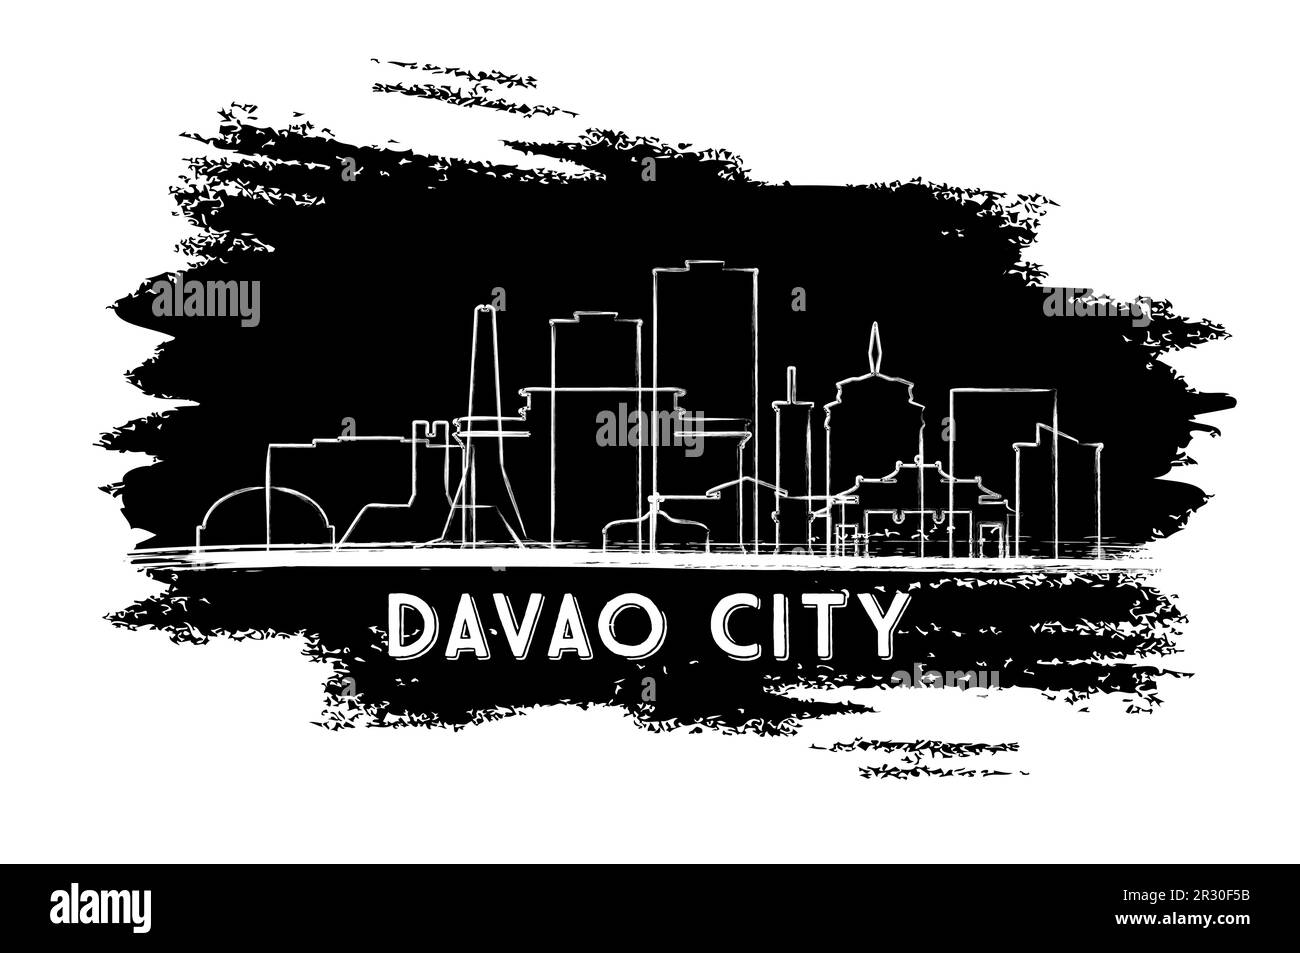 Davao City Philippines Skyline Silhouette. Esquisse dessinée à la main. Concept de voyage d'affaires et de tourisme avec architecture historique. Illustration vectorielle. Illustration de Vecteur